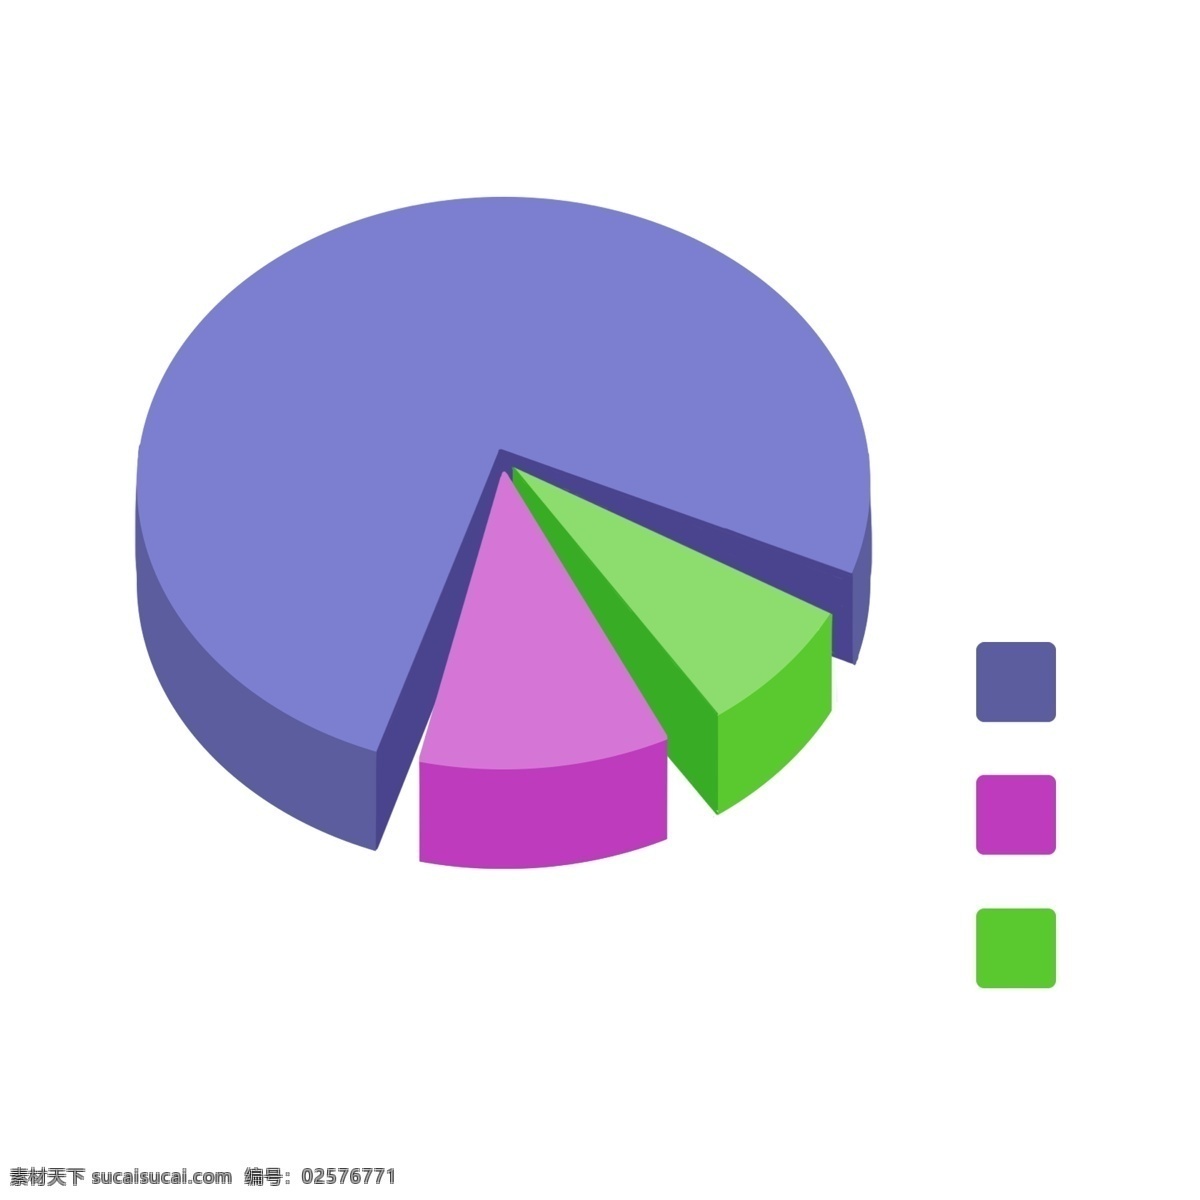 圆形 分析图表 插画 紫色的半圆 卡通插画 ppt插画 ppt图表 ppt分析 圆形的图表